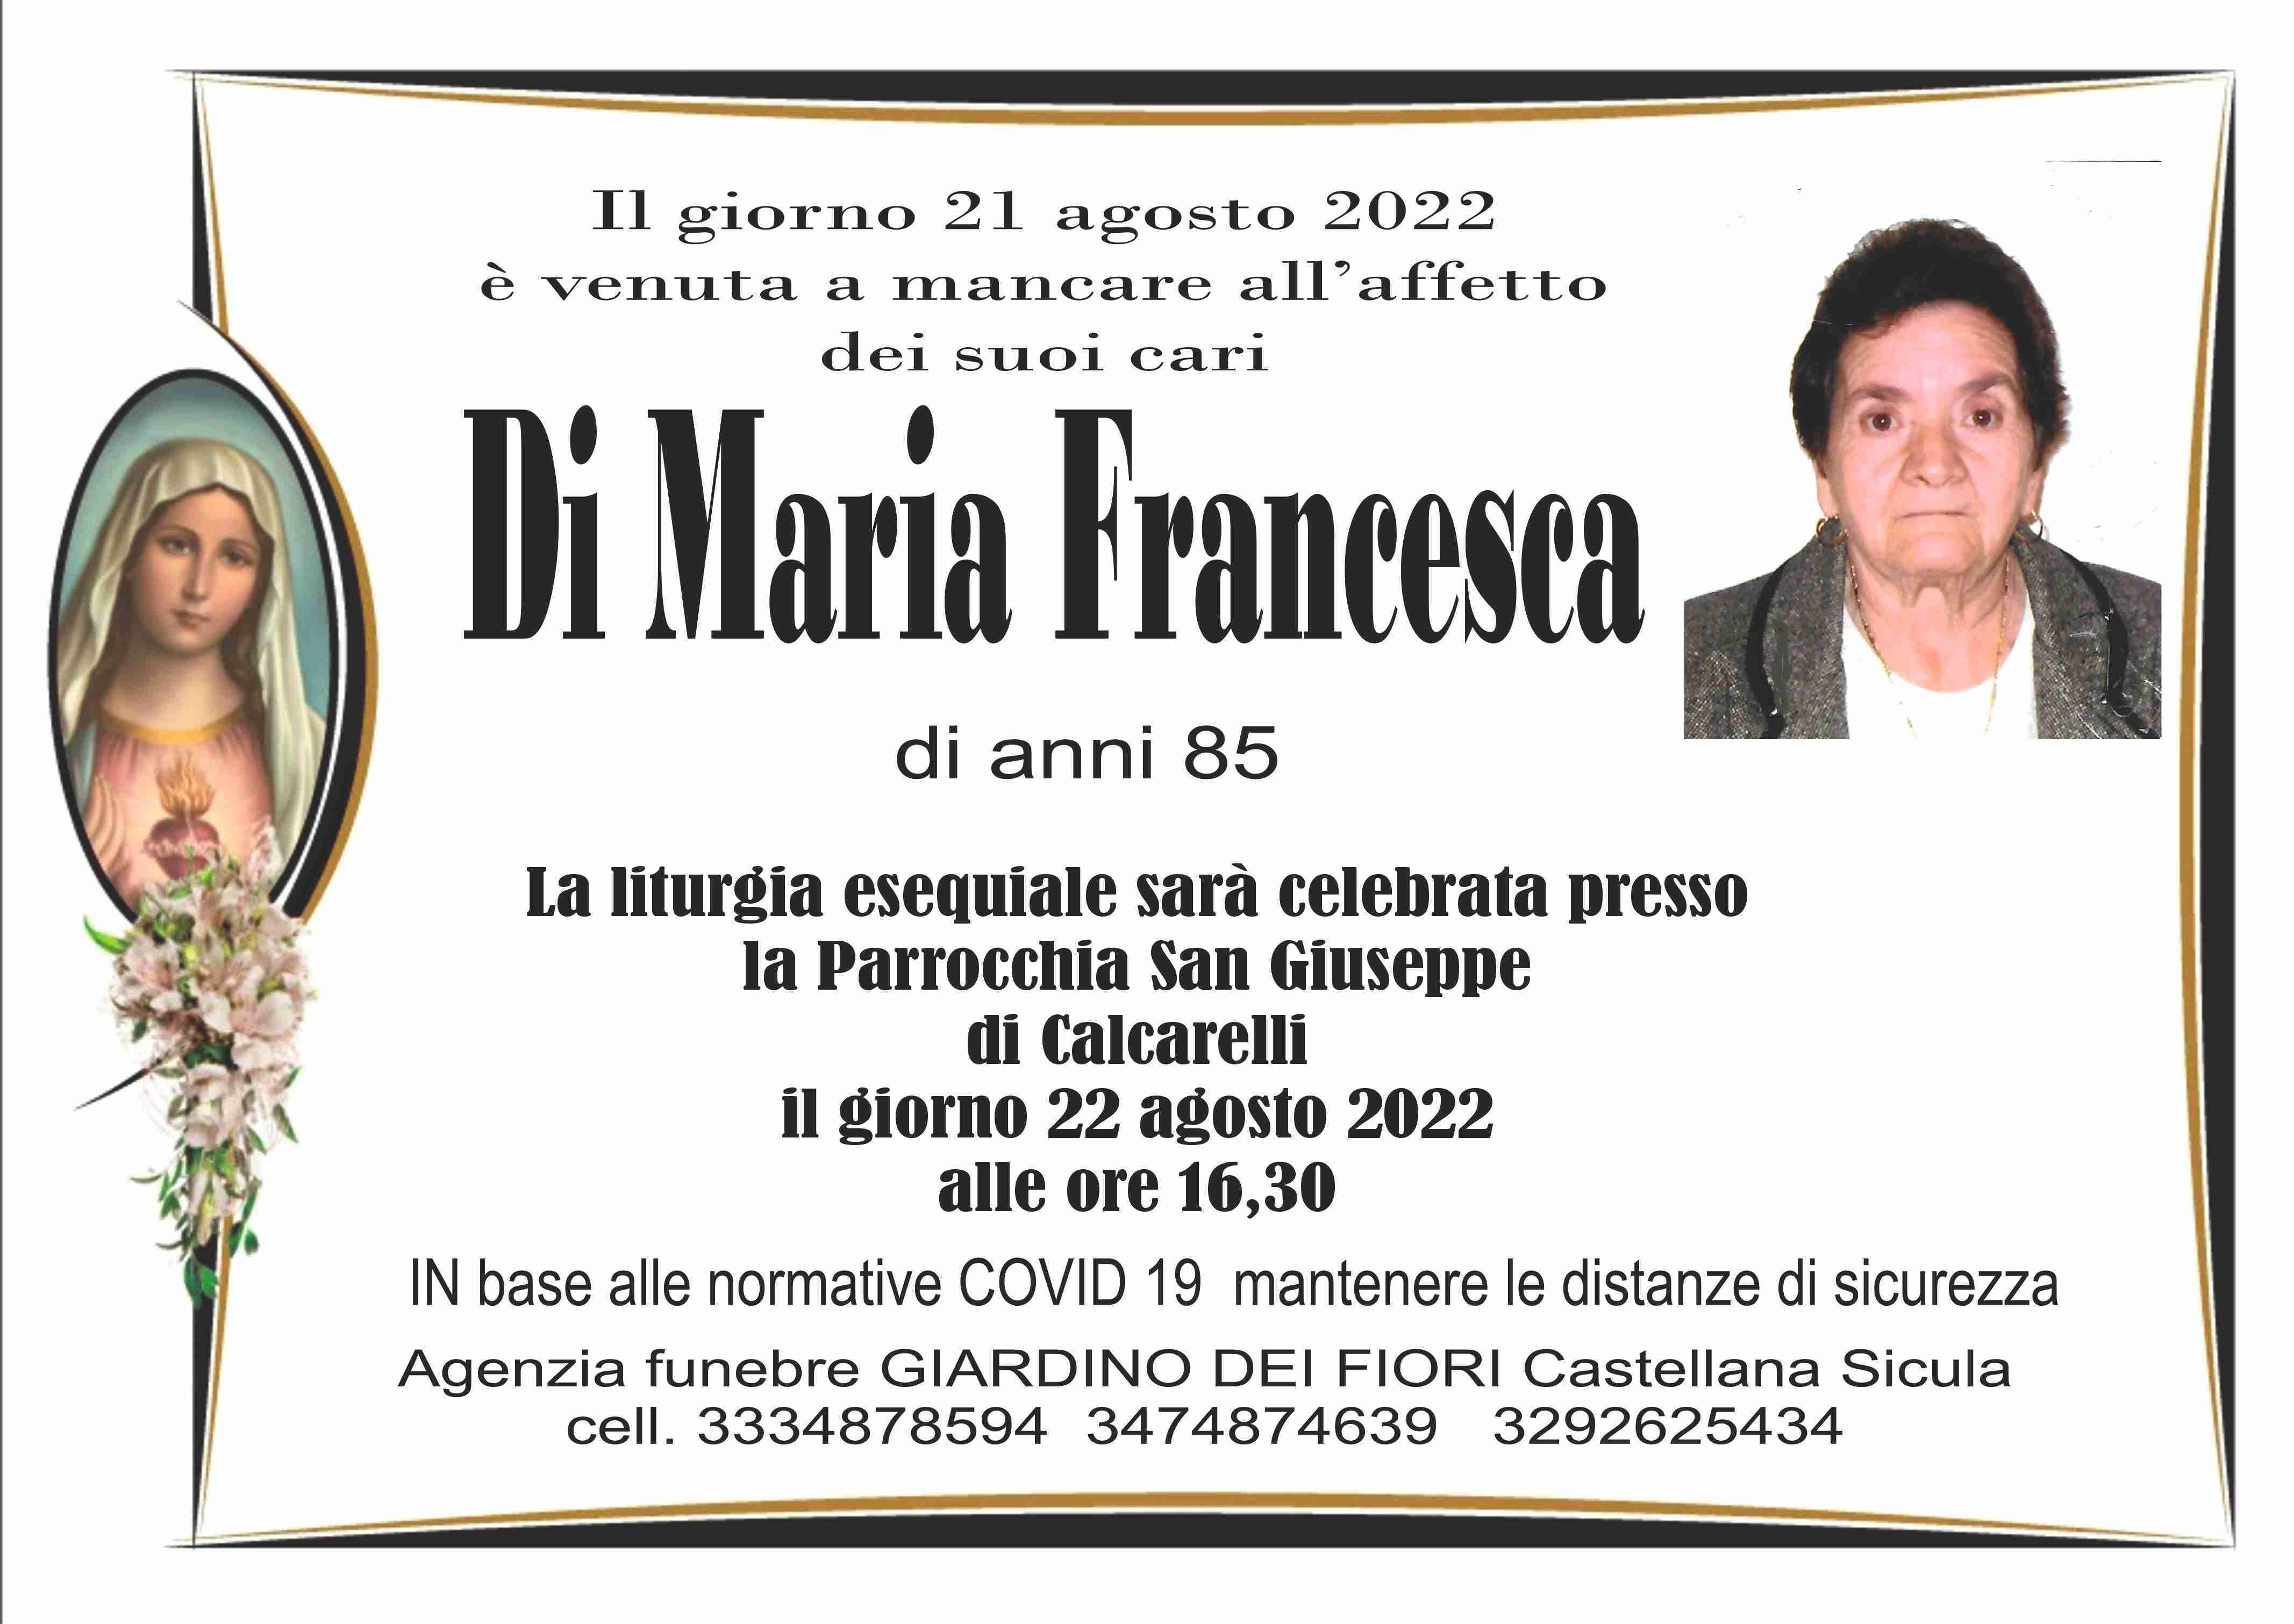 Francesca Di Maria